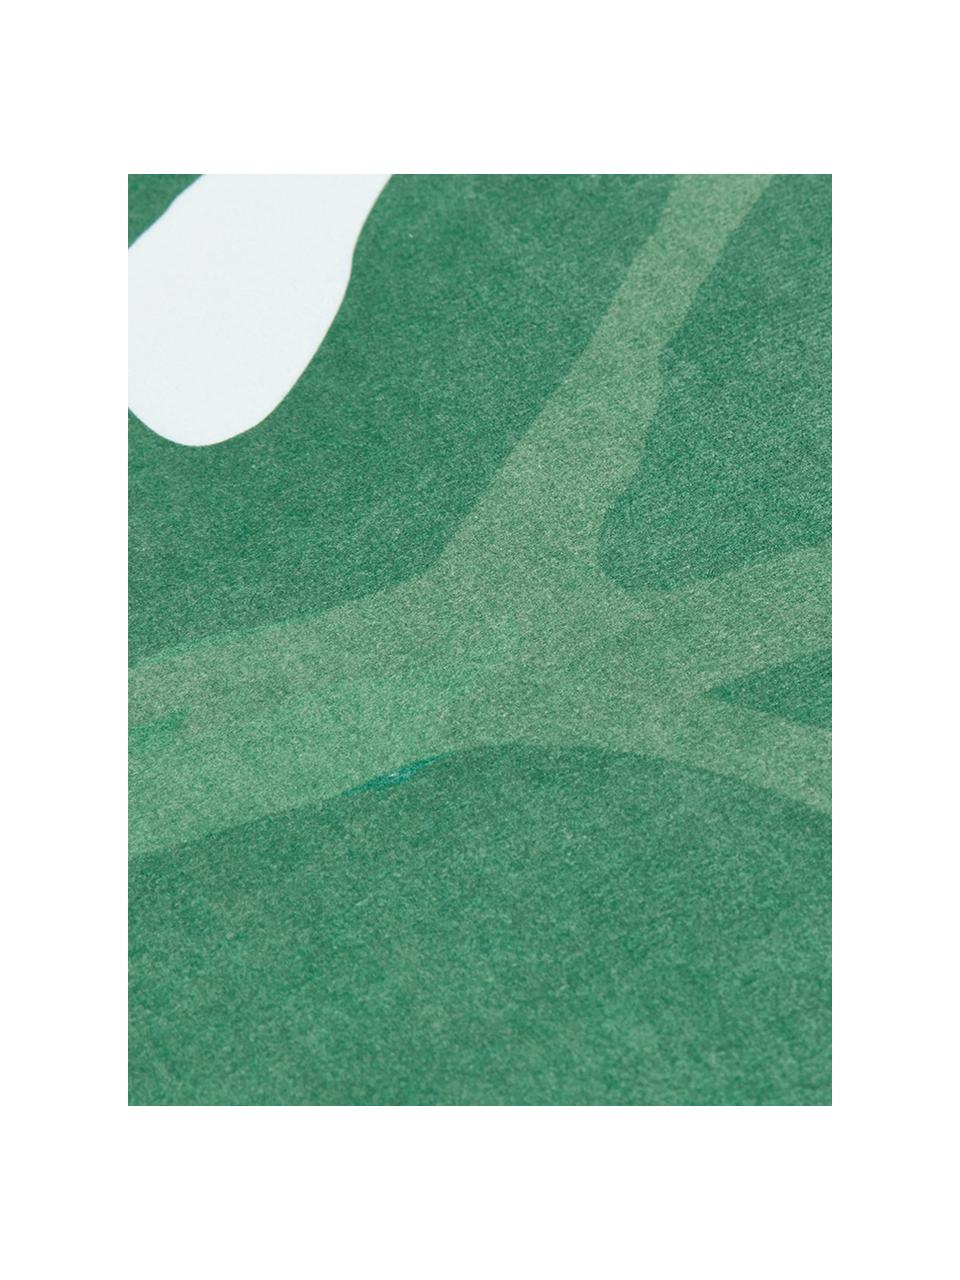 Strandlaken Leaves in bladvorm, 55% polyester, 45% katoen
Zeer lichte kwaliteit 340 g/m², Groen, wit, 139 x 150 cm